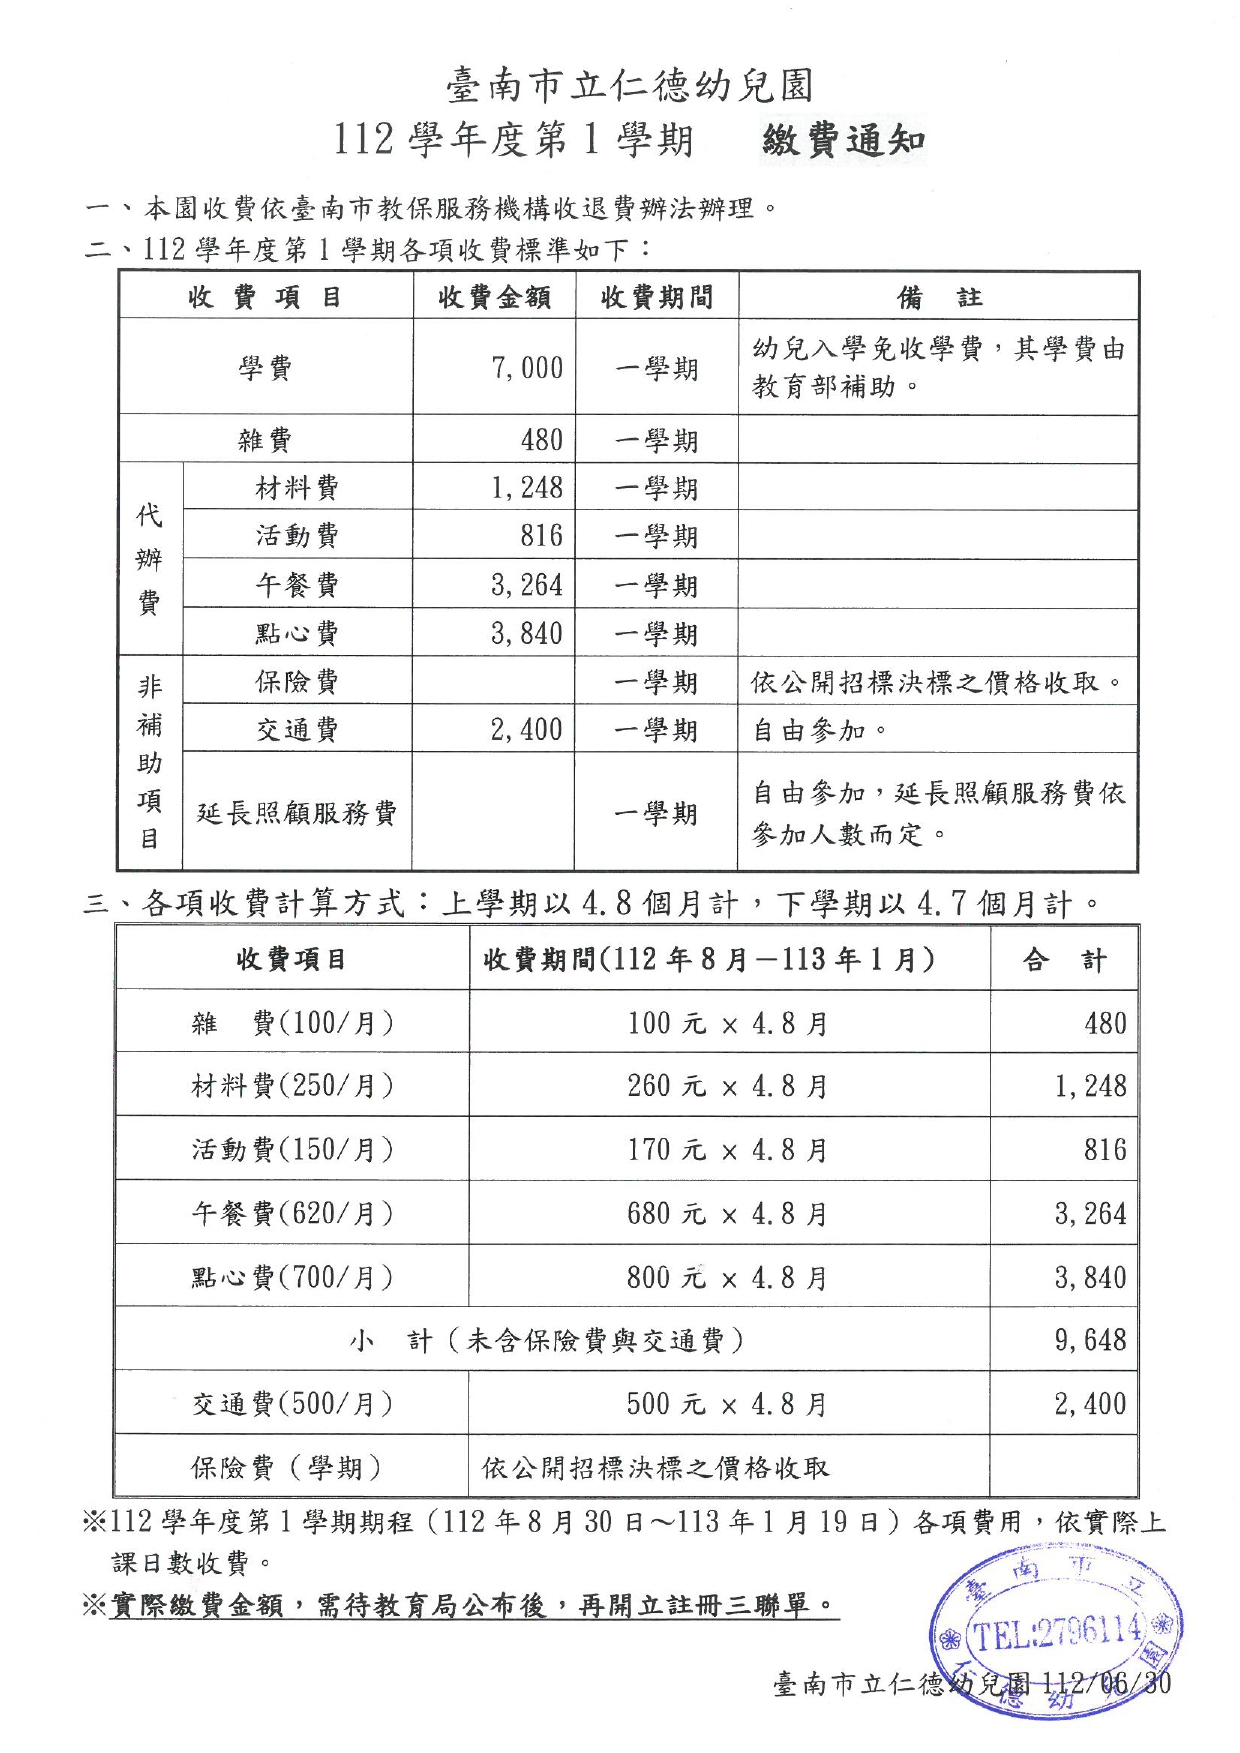 台南市立仁德幼兒園112學年收退費辦法及繳費通知